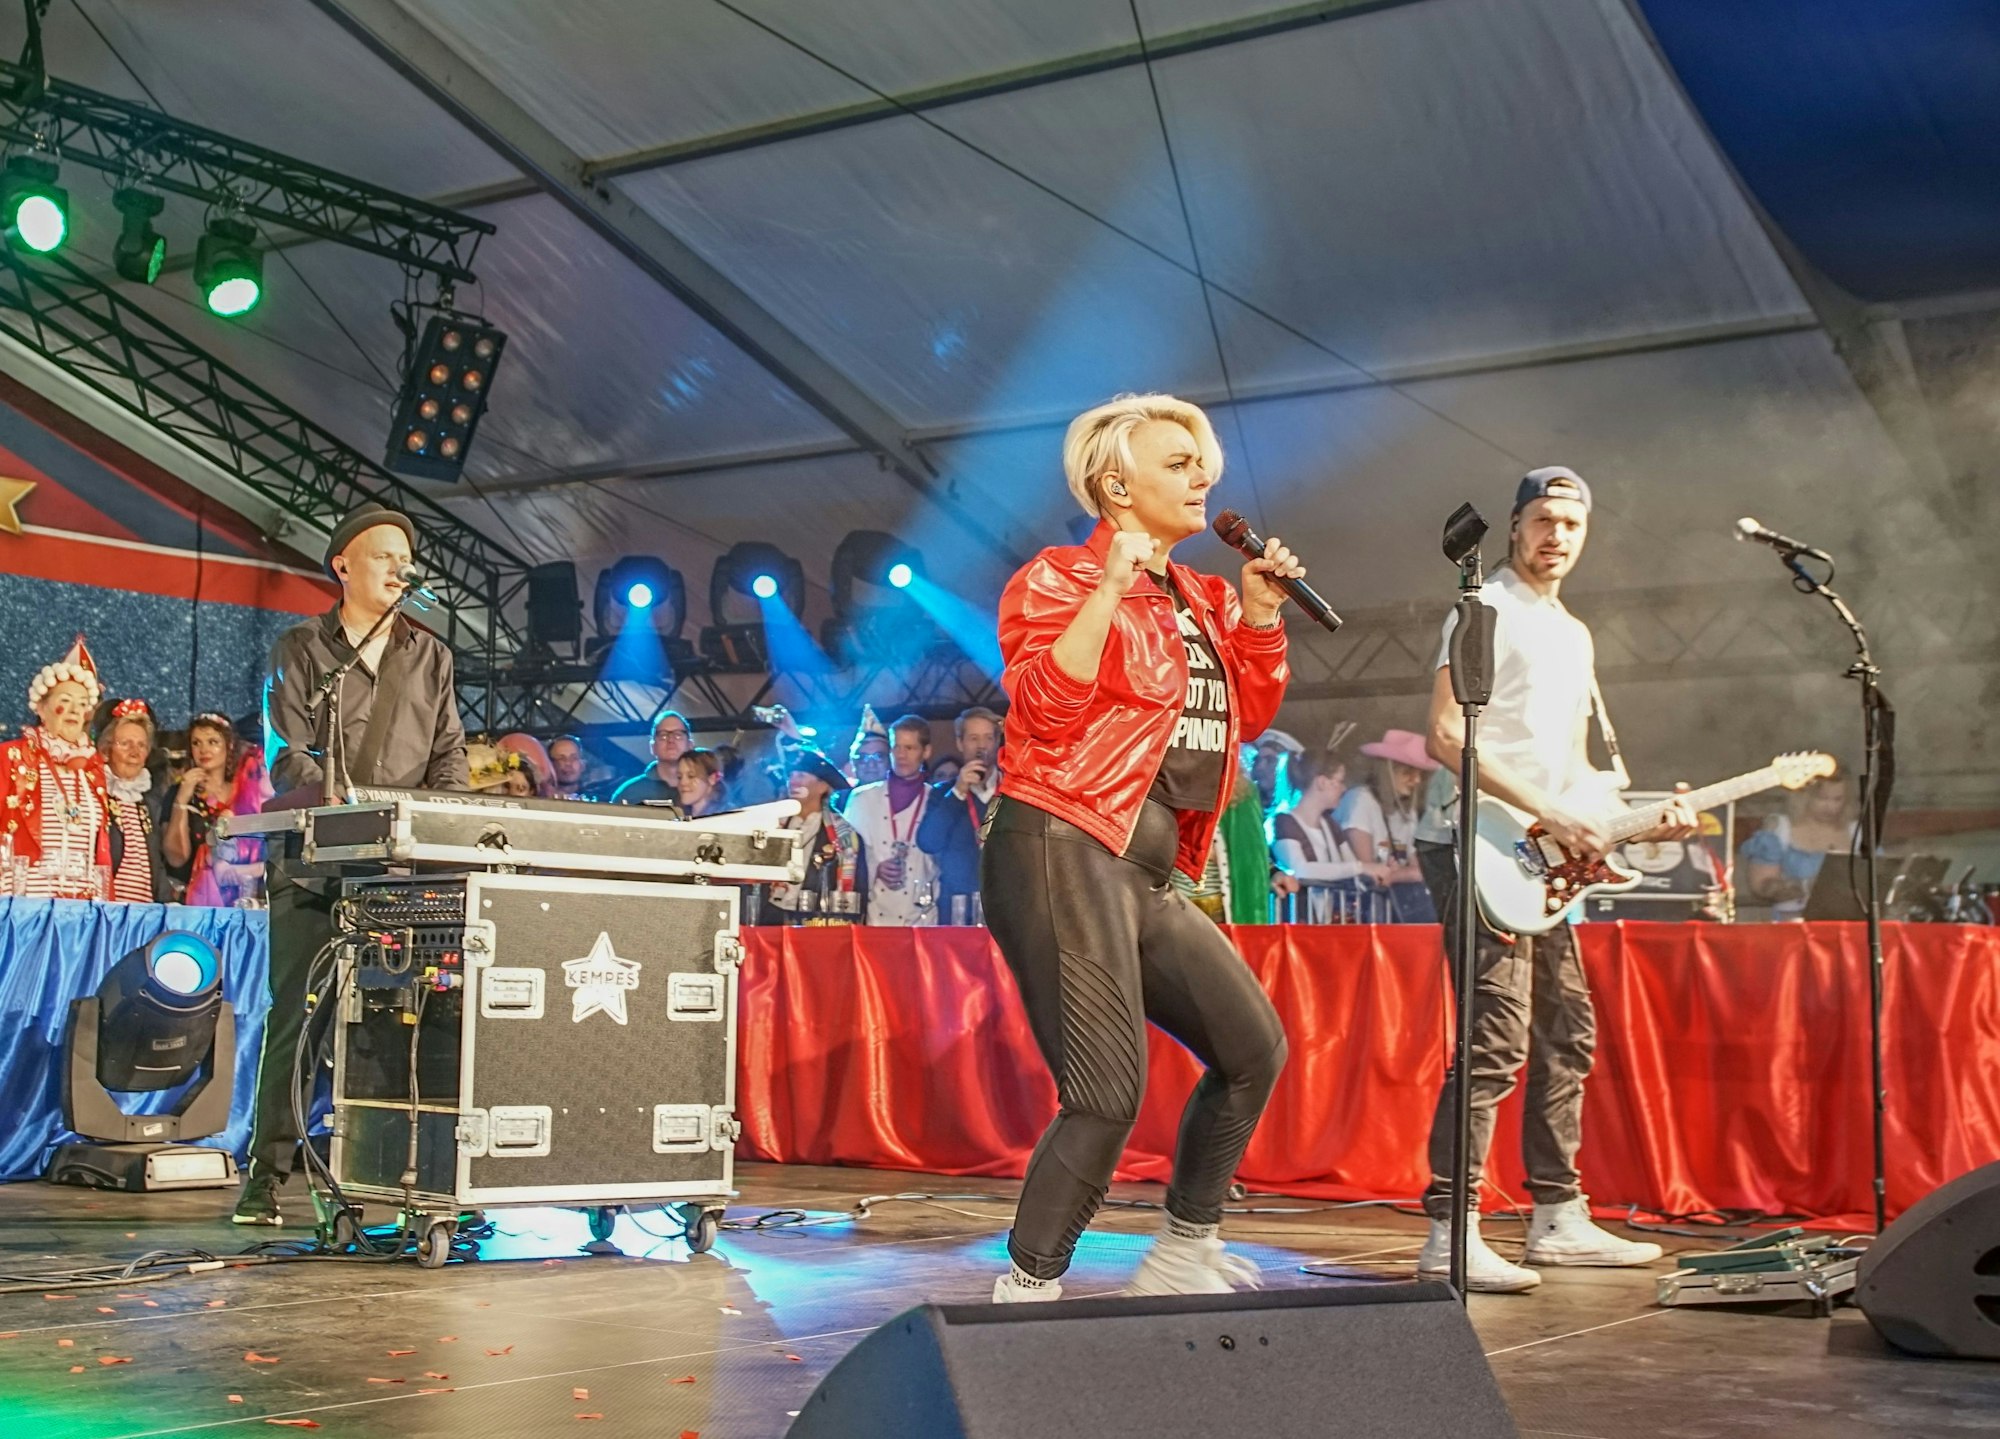 Die Mitglieder der Band stehen auf der Bühne. Sängerin Nici Kempermann trägt eine rote Lederjacke und hält das Mikrofon in der Hand.